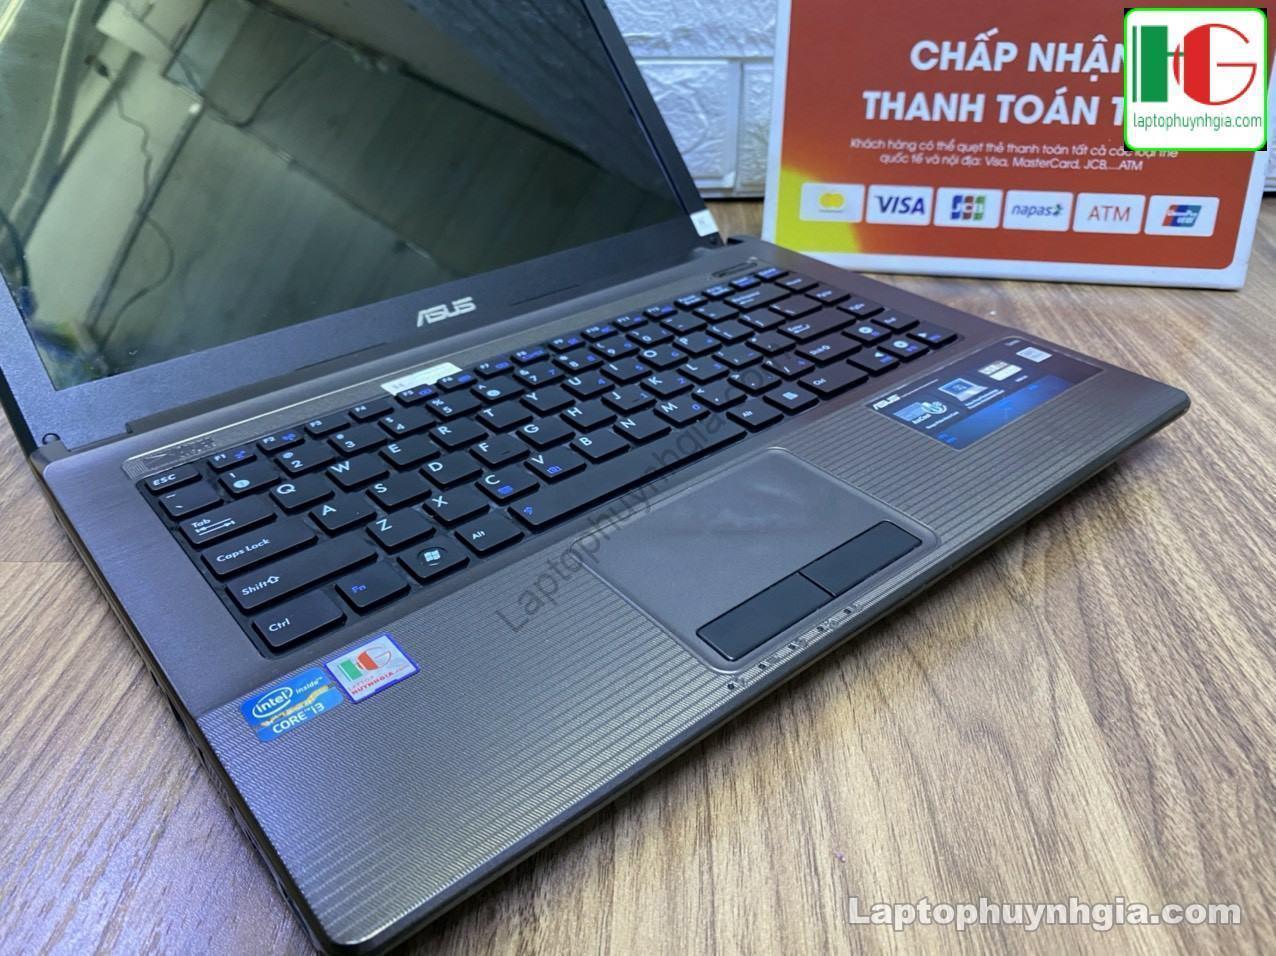 Asus K84 I3 2330m 4G HDD320G LCD 14 Laptophuynhgia 4 - Laptop Cũ Bình Dương Huỳnh Gia